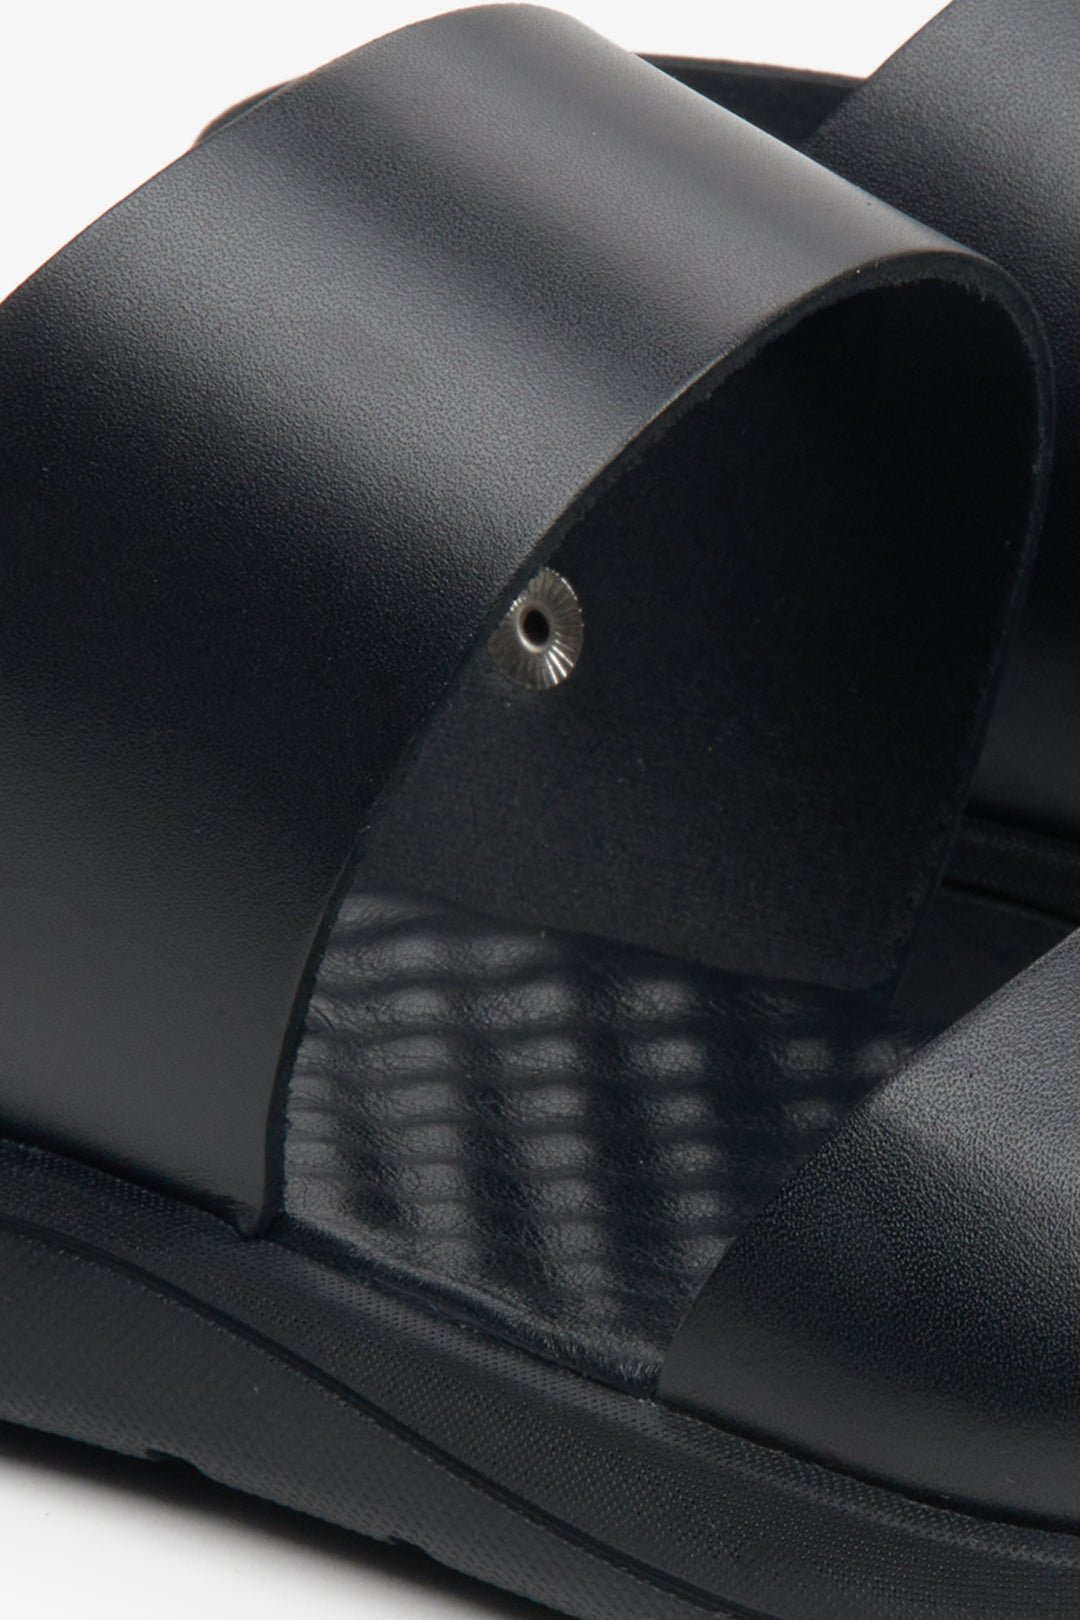 Leather, men's black sandals by Estro - close-up on details.